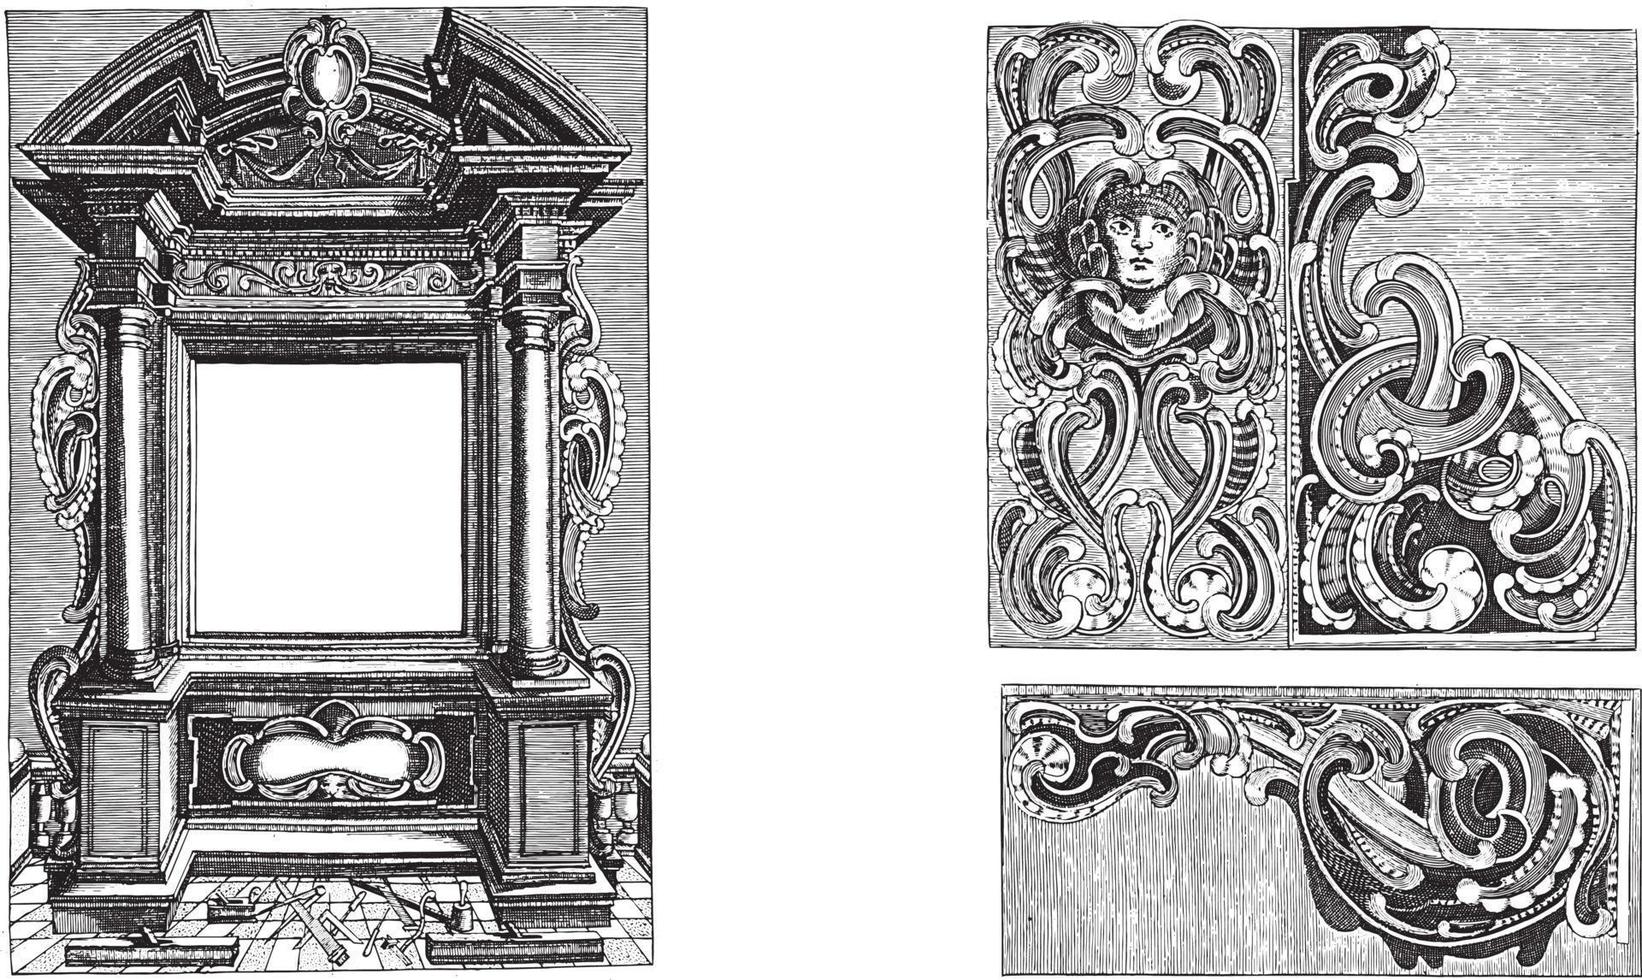 enquadramento de título arquitetônico e três ornamentos em estilo de lóbulo, ilustração anônima, vintage. vetor